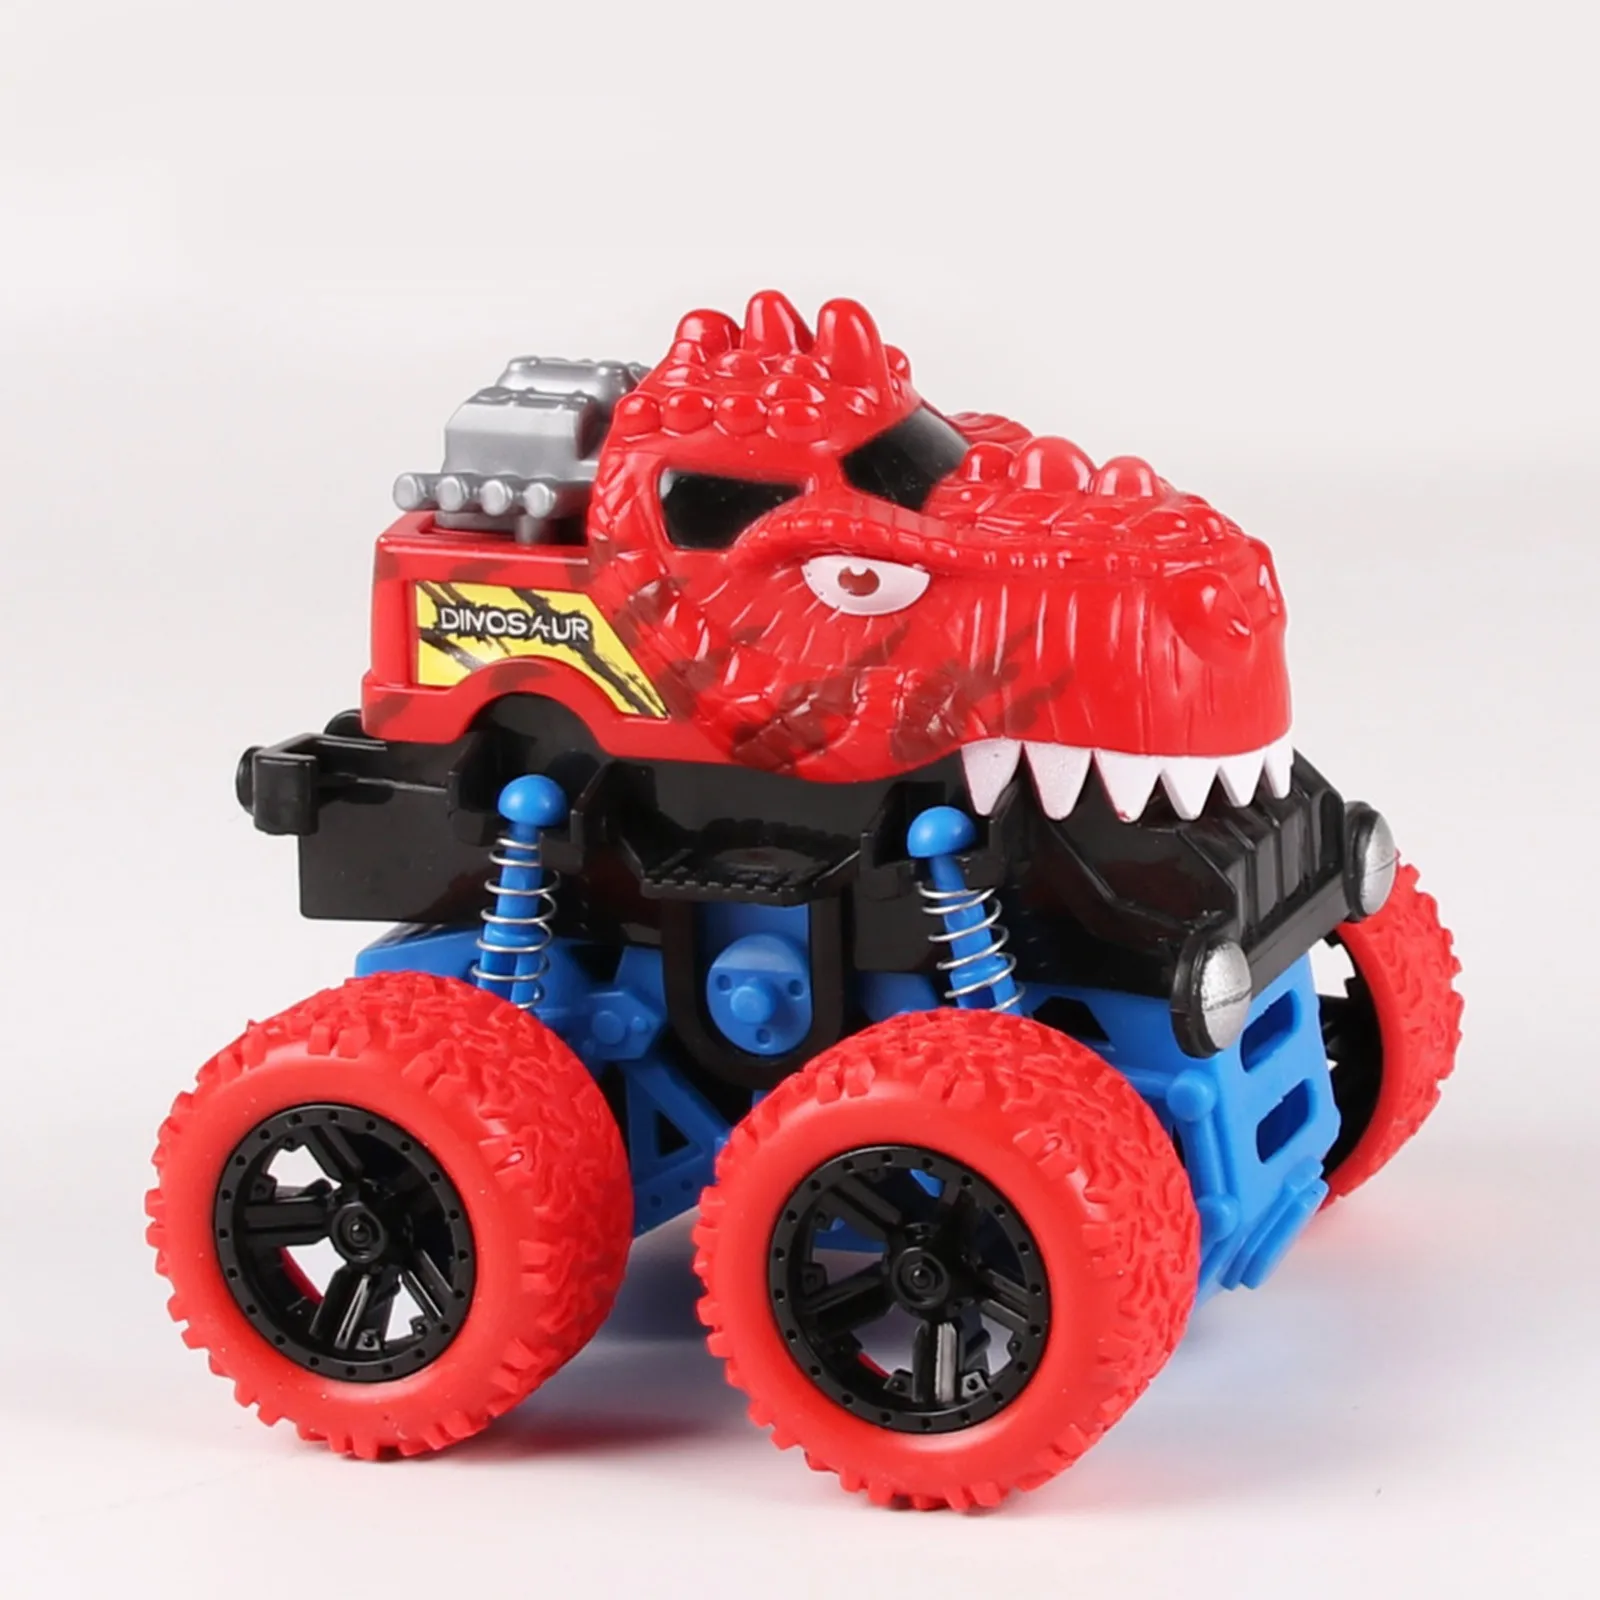 Tanio 2 w 1 Monster Truck transformacja samochód zabawka dzieci